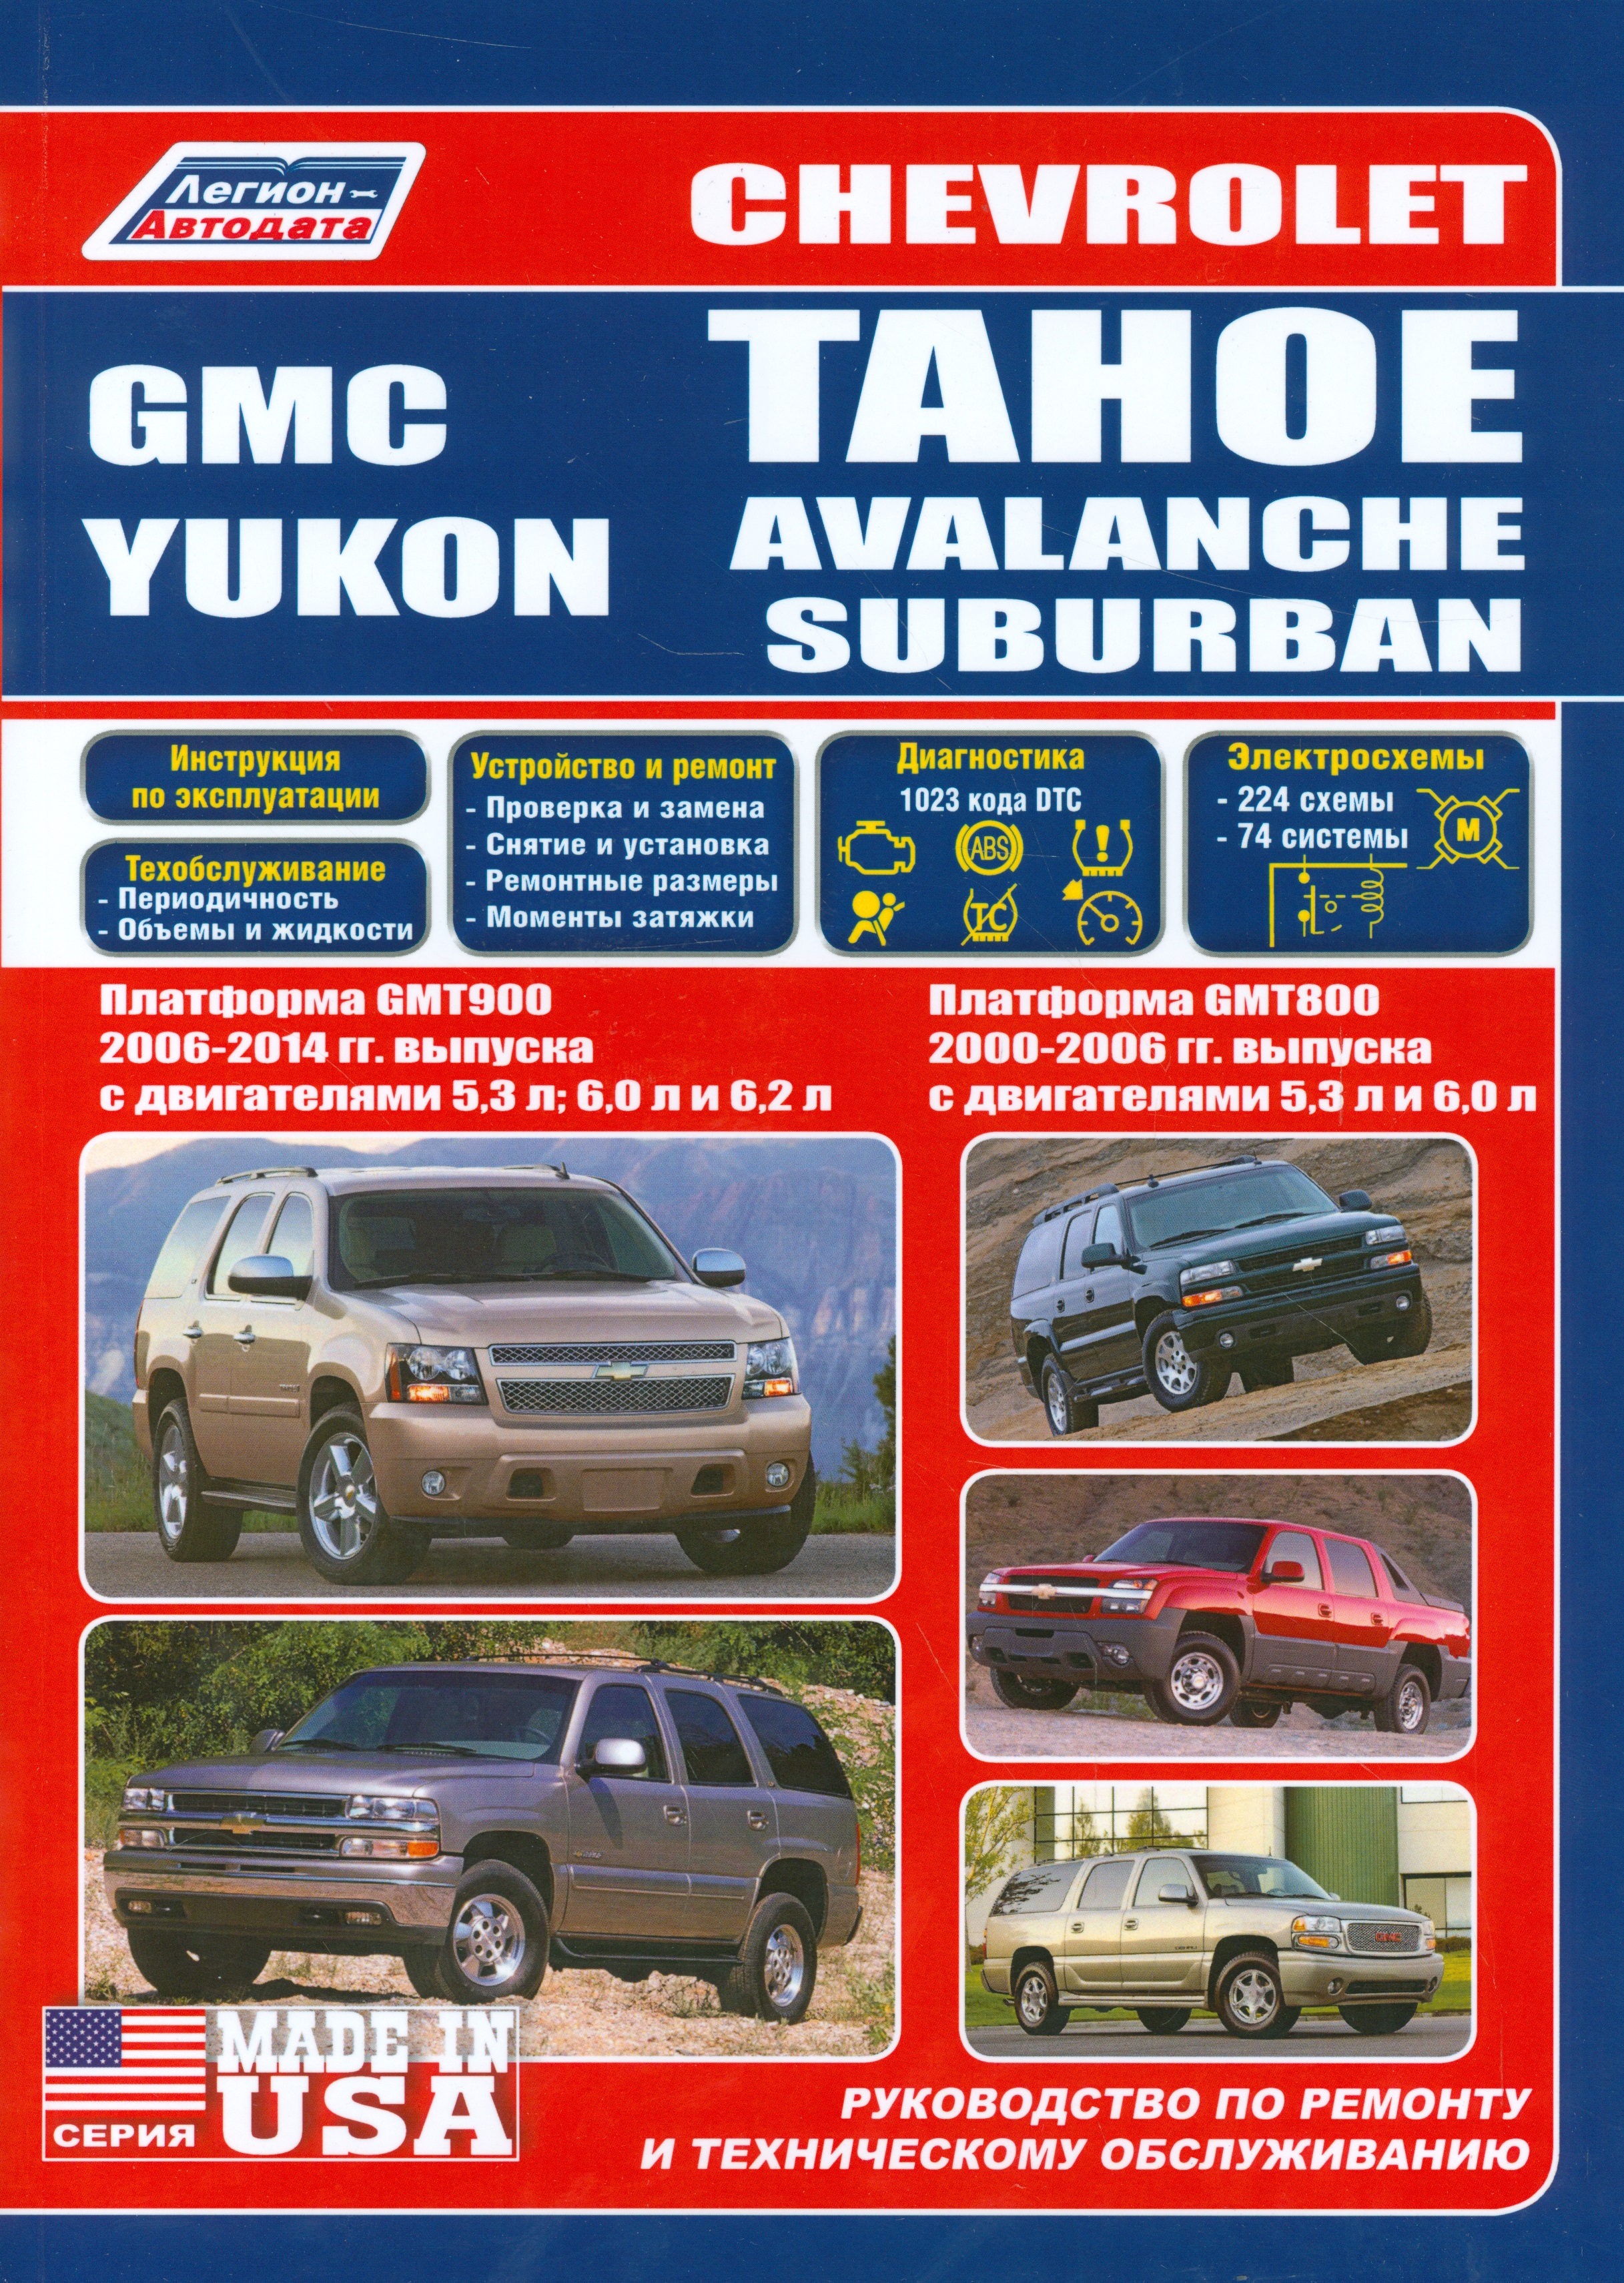 Chevrolet Tahoe. Avalanche, Suburban GMC Yukon. Платформа GMT800 2000-2006 гг. выпуска с двигателями 5,3 л. И 6,0 л. Платформа GMT900 2006-2014 гг. выпуска с двигателями 5,3 л., 6,0 л., 6,2 л. Руководство по ремонту и техническому обслуживанию